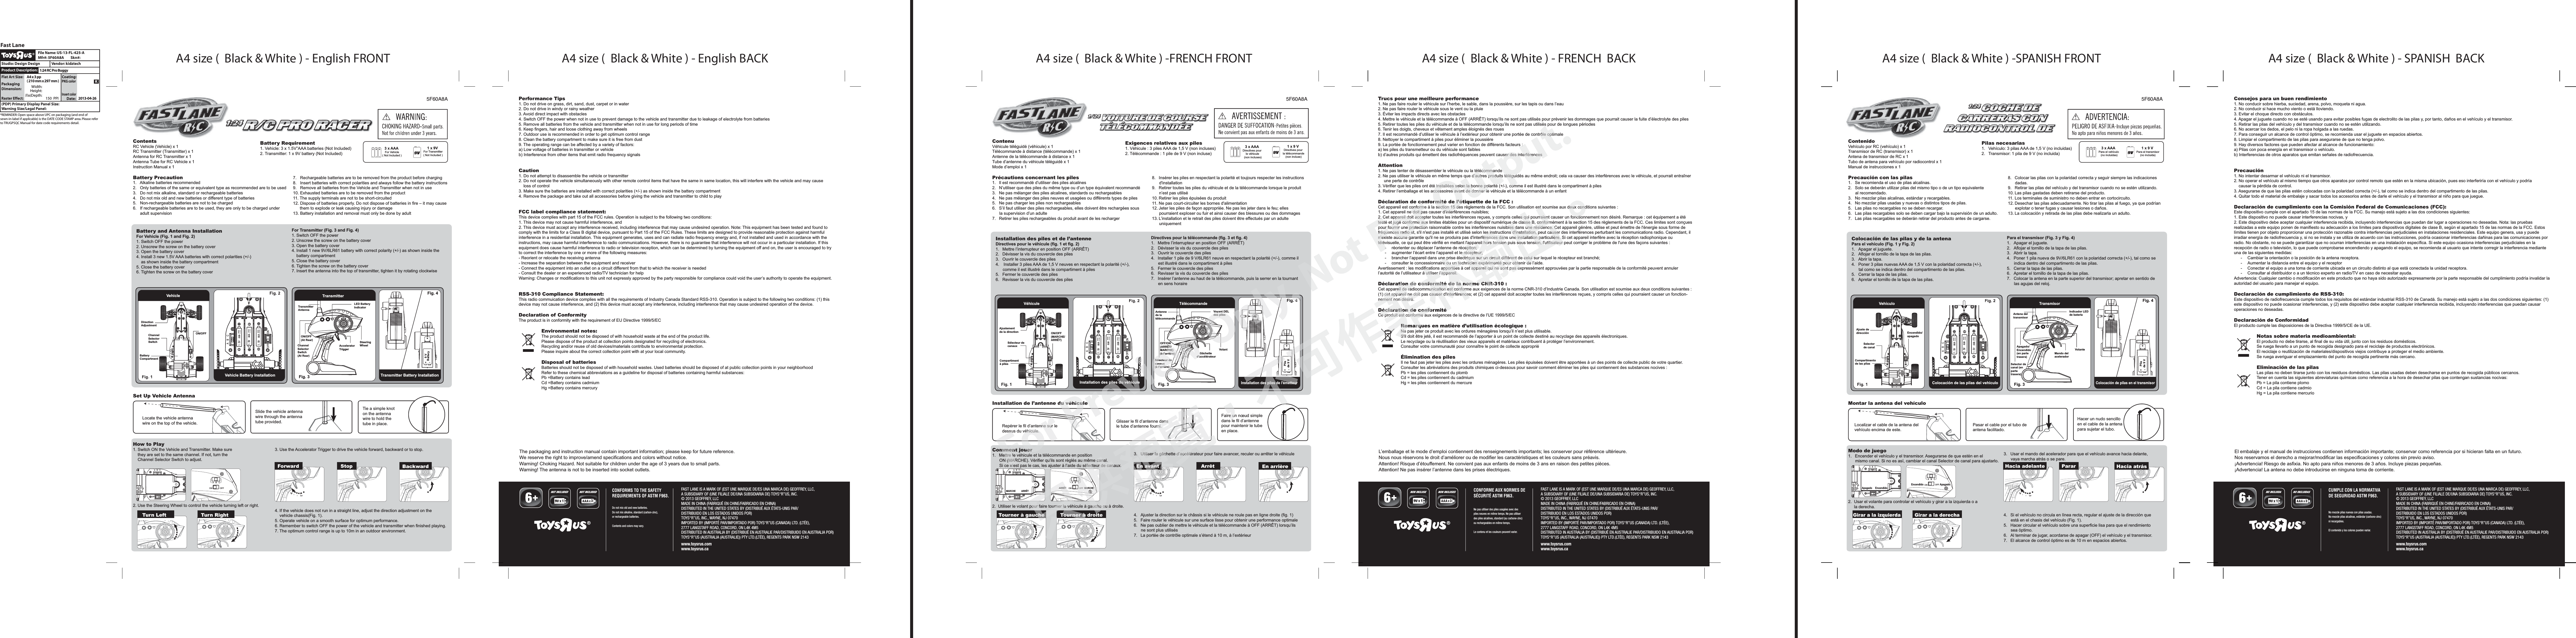 A4 size (  Black &amp; White ) - English FRONT A4 size (  Black &amp; White ) - English BACK A4 size (  Black &amp; White ) -FRENCH FRONT A4 size (  Black &amp; White ) - FRENCH  BACK A4 size (  Black &amp; White ) -SPANISH FRONT A4 size (  Black &amp; White ) - SPANISH  BACKCONFORMS TO THE SAFETY REQUIREMENTS OF ASTM F963.Do not mix old and new batteries.Do not mix alkaline, standard (carbon-zinc), or rechargeable batteries.Contents and colors may vary.NOT INCLUDED NOT INCLUDED3FAST LANE IS A MARK OF (EST UNE MARQUE DE/ES UNA MARCA DE) GEOFFREY, LLC, A SUBSIDIARY OF (UNE FILIALE DE/UNA SUBSIDIARIA DE) TOYS“R”US, INC.© 2013 GEOFFREY, LLCMADE IN CHINA (FABRIQUÉ EN CHINE/FABRICADO EN CHINA)DISTRIBUTED IN THE UNITED STATES BY (DISTRIBUÉ AUX ÉTATS-UNIS PAR/DISTRIBUIDO EN LOS ESTADOS UNIDOS POR) TOYS“R”US, INC., WAYNE, NJ 07470 IMPORTED BY (IMPORTÉ PAR/IMPORTADO POR) TOYS“R”US (CANADA) LTD. (LTÉE), 2777 LANGSTAFF ROAD, CONCORD, ON L4K 4M5DISTRIBUTED IN AUSTRALIA BY (DISTRIBUÉ EN AUSTRALIE PAR/DISTRIBUIDO EN AUSTRALIA POR) TOYS“R”US (AUSTRALIA (AUSTRALIE)) PTY LTD.(LTÉE), REGENTS PARK NSW 2143www.toysrus.comwww.toysrus.ca5F60A8AFAST LANE IS A MARK OF (EST UNE MARQUE DE/ES UNA MARCA DE) GEOFFREY, LLC, A SUBSIDIARY OF (UNE FILIALE DE/UNA SUBSIDIARIA DE) TOYS“R”US, INC.© 2013 GEOFFREY, LLCMADE IN CHINA (FABRIQUÉ EN CHINE/FABRICADO EN CHINA)DISTRIBUTED IN THE UNITED STATES BY (DISTRIBUÉ AUX ÉTATS-UNIS PAR/DISTRIBUIDO EN LOS ESTADOS UNIDOS POR) TOYS“R”US, INC., WAYNE, NJ 07470 IMPORTED BY (IMPORTÉ PAR/IMPORTADO POR) TOYS“R”US (CANADA) LTD. (LTÉE), 2777 LANGSTAFF ROAD, CONCORD, ON L4K 4M5DISTRIBUTED IN AUSTRALIA BY (DISTRIBUÉ EN AUSTRALIE PAR/DISTRIBUIDO EN AUSTRALIA POR) TOYS“R”US (AUSTRALIA (AUSTRALIE)) PTY LTD.(LTÉE), REGENTS PARK NSW 2143www.toysrus.comwww.toysrus.ca5F60A8ACONFORME AUX NORMES DESÉCURITÉ ASTM F963.Ne pas utiliser des piles usagées avec des piles neuves en même temps. Ne pas utiliser des piles alcalines, standard (au carbone-zinc) ou rechargeables en même temps.Le contenu et les couleurs peuvent varier.NON INCLUSE NON INCLUSES3FAST LANE IS A MARK OF (EST UNE MARQUE DE/ES UNA MARCA DE) GEOFFREY, LLC, A SUBSIDIARY OF (UNE FILIALE DE/UNA SUBSIDIARIA DE) TOYS“R”US, INC.© 2013 GEOFFREY, LLCMADE IN CHINA (FABRIQUÉ EN CHINE/FABRICADO EN CHINA)DISTRIBUTED IN THE UNITED STATES BY (DISTRIBUÉ AUX ÉTATS-UNIS PAR/DISTRIBUIDO EN LOS ESTADOS UNIDOS POR) TOYS“R”US, INC., WAYNE, NJ 07470 IMPORTED BY (IMPORTÉ PAR/IMPORTADO POR) TOYS“R”US (CANADA) LTD. (LTÉE), 2777 LANGSTAFF ROAD, CONCORD, ON L4K 4M5DISTRIBUTED IN AUSTRALIA BY (DISTRIBUÉ EN AUSTRALIE PAR/DISTRIBUIDO EN AUSTRALIA POR) TOYS“R”US (AUSTRALIA (AUSTRALIE)) PTY LTD.(LTÉE), REGENTS PARK NSW 2143www.toysrus.comwww.toysrus.ca5F60A8ACUMPLE CON LA NORMATIVA DE SEGURIDAD ASTM F963.No mezcle pilas nuevas con pilas usadas.No mezcle pilas alcalinas, estándar (carbono-zinc) ni recargables.El contenido y los colores pueden variar.NO INCLUIDA NO INCLUIDAS  3ContenuVéhicule téléguidé (véhicule) x 1Télécommande à distance (télécommande) x 1Antenne de la télécommande à distance x 1Tube d’antenne du véhicule téléguidé x 1Mode d’emploi x 1Précautions concernant les piles1.  Il est recommandé d’utiliser des piles alcalines2.  N’utiliser que des piles du même type ou d’un type équivalent recommandé3.  Ne pas mélanger des piles alcalines, standards ou rechargeables4.  Ne pas mélanger des piles neuves et usagées ou différents types de piles5.  Ne pas charger les piles non rechargeables6.  S’il faut utiliser des piles rechargeables, elles doivent être rechargées sous       la supervision d’un adulte7.  Retirer les piles rechargeables du produit avant de les rechargerComment jouer1.  Mettre le véhicule et la télécommande en position       ON (MARCHE). Vérifier qu’ils sont réglés au même canal.       Si ce n’est pas le cas, les ajuster à l’aide du sélecteur de canaux.2.  Utiliser le volant pour faire tourner le véhicule à gauche ou à droite.Trucs pour une meilleure performance1. Ne pas faire rouler le véhicule sur l’herbe, le sable, dans la poussière, sur les tapis ou dans l’eau2. Ne pas faire rouler le véhicule sous le vent ou la pluie3. Éviter les impacts directs avec les obstacles4. Mettre le véhicule et la télécommande à OFF (ARRÊT) lorsqu’ils ne sont pas utilisés pour prévenir les dommages que pourrait causer la fuite d’électrolyte des piles5. Retirer toutes les piles du véhicule et de la télécommande lorsqu’ils ne sont pas utilisés pour de longues périodes6. Tenir les doigts, cheveux et vêtement amples éloignés des roues7. Il est recommandé d’utiliser le véhicule à l’extérieur pour obtenir une portée de contrôle optimale8. Nettoyer le compartiment à piles pour éliminer la poussière9. La portée de fonctionnement peut varier en fonction de différents facteurs :a) les piles du transmetteur ou du véhicule sont faiblesb) d’autres produits qui émettent des radiofréquences peuvent causer des interférencesAttention1. Ne pas tenter de désassembler le véhicule ou la télécommande2. Ne pas utiliser le véhicule en même temps que d’autres produits téléguidés au même endroit; cela va causer des interférences avec le véhicule, et pourrait entraîner      une perte de contrôle3. Vérifier que les piles ont été installées selon la bonne polarité (+/-), comme il est illustré dans le compartiment à piles4. Retirer l’emballage et les accessoires avant de donner le véhicule et la télécommande à un enfantDéclaration de conformité de l’étiquette de la FCC:Cet appareil est conforme à la section 15 des règlements de la FCC. Son utilisation est soumise aux deux conditions suivantes :1. Cet appareil ne doit pas causer d&apos;interférences nuisibles;2. Cet appareil doit accepter toutes les interférences reçues, y compris celles qui pourraient causer un fonctionnement non désiré. Remarque : cet équipement a été testé et jugé conforme aux limites établies pour un dispositif numérique de classe B, conformément à la section 15 des règlements de la FCC. Ces limites sont conçues pour fournir une protection raisonnable contre les interférences nuisibles dans une résidence. Cet appareil génère, utilise et peut émettre de l&apos;énergie sous forme de fréquences radio et, s&apos;il n&apos;est pas installé et utilisé selon les instructions d&apos;installation, peut causer des interférences perturbant les communications radio. Cependant, il n’existe aucune garantie qu&apos;il ne se produira pas d&apos;interférences dans une installation particulière. Si cet appareil interfère avec la réception radiophonique ou télévisuelle, ce qui peut être vérifié en mettant l&apos;appareil hors tension puis sous tension, l&apos;utilisateur peut corriger le problème de l&apos;une des façons suivantes :  -  réorienter ou déplacer l’antenne de réception;  -  augmenter l’écart entre l’appareil et le récepteur;  -  brancher l’appareil dans une prise électrique sur un circuit différent de celui sur lequel le récepteur est branché;  -  consulter le concessionnaire ou un technicien expérimenté pour obtenir de l’aide.Avertissement : les modifications apportées à cet appareil qui ne sont pas expressément approuvées par la partie responsable de la conformité peuvent annuler l’autorité de l’utilisateur à utiliser l’appareil.Déclaration de conformité de la norme CNR-310:Cet appareil de radiocommunication est conforme aux exigences de la norme CNR-310 d’Industrie Canada. Son utilisation est soumise aux deux conditions suivantes : (1) cet appareil ne doit pas causer d&apos;interférences; et (2) cet appareil doit accepter toutes les interférences reçues, y compris celles qui pourraient causer un fonction-nement non désiré.Déclaration de conformitéCe produit est conforme aux exigences de la directive de l’UE 1999/5/ECRemarques en matière d’utilisation écologique:Ne pas jeter ce produit avec les ordures ménagères lorsqu’il n’est plus utilisable.S&apos;il doit être jeté, il est recommandé de l’apporter à un point de collecte destiné au recyclage des appareils électroniques.Le recyclage ou la réutilisation des vieux appareils et matériaux contribuent à protéger l’environnement.Consulter votre communauté pour connaître le point de collecte appropriéÉlimination des pilesIl ne faut pas jeter les piles avec les ordures ménagères. Les piles épuisées doivent être apportées à un des points de collecte public de votre quartier. Consulter les abréviations des produits chimiques ci-dessous pour savoir comment éliminer les piles qui contiennent des substances nocives :Pb = les piles contiennent du plombCd = les piles contiennent du cadmiumHg = les piles contiennent du mercure3 x AAA Directives pour le véhicule (non incluses)1 x 9 V Directives pour la télécommande(non incluse)Exigences relatives aux piles1. Véhicule : 3 piles AAA de 1,5 V (non incluses)2. Télécommande : 1 pile de 9 V (non incluse)L’emballage et le mode d’emploi contiennent des renseignements importants; les conserver pour référence ultérieure.Nous nous réservons le droit d’améliorer ou de modifier les caractéristiques et les couleurs sans préavis.Attention! Risque d’étouffement. Ne convient pas aux enfants de moins de 3 ans en raison des petites pièces.Attention! Ne pas insérer l’antenne dans les prises électriques.TélécommandeInstallation des piles de l&apos;émetteurFig. 3 Fig. 4 Directives pour la télécommande (fig. 3 et fig. 4)1.  Mettre l’interrupteur en position OFF (ARRÊT)2.  Dévisser la vis du couvercle des piles3.  Ouvrir le couvercle des piles4.  Installer 1 pile de 9 V/6LR61 neuve en respectant la polarité (+/-), comme il       est illustré dans le compartiment à piles5.  Fermer le couvercle des piles6.  Revisser la vis du couvercle des piles7.  Insérer l’antenne au haut de la télécommande, puis la serrer en la tournant       en sens horaireInstallation des piles et de l’antenneDirectives pour le véhicule (fig. 1 et fig. 2)1.  Mettre l’interrupteur en position OFF (ARRÊT)2.  Dévisser la vis du couvercle des piles3.  Ouvrir le couvercle des piles4.   Installer 3 piles AAA de 1,5 V neuves en respectant la polarité (+/-),       comme il est illustré dans le compartiment à piles5.  Fermer le couvercle des piles6.  Revisser la vis du couvercle des pilesInstallation de l’antenne du véhiculeVoyant DEL des pilesVolantOFF/ON (ARRÊT/MARCHE) (à l’arrière)Sélecteur de canaux (à l’arrière)Gâchette d’accélérateurAntenne de la télécommandeAjustement de la directionCompartiment à pilesON/OFF (MARCHE/ARRÊT)Tourner à gauche Tourner à droiteEn avant Arrêt En arrièreOFFONA  B  C3.  Utiliser la gâchette d’accélérateur pour faire avancer, reculer ou arrêter le véhicule4.  Ajuster la direction sur le châssis si le véhicule ne roule pas en ligne droite (fig. 1)5.  Faire rouler le véhicule sur une surface lisse pour obtenir une performance optimale6.  Ne pas oublier de mettre le véhicule et la télécommande à OFF (ARRÊT) lorsqu’ils       ne sont plus utilisés7.  La portée de contrôle optimale s’étend à 10 m, à l’extérieur8.  Insérer les piles en respectant la polarité et toujours respecter les instructions        d&apos;installation9.  Retirer toutes les piles du véhicule et de la télécommande lorsque le produit       n’est pas utilisé10. Retirer les piles épuisées du produit11. Ne pas court-circuiter les bornes d&apos;alimentation12. Jeter les piles de façon appropriée. Ne pas les jeter dans le feu; elles       pourraient exploser ou fuir et ainsi causer des blessures ou des dommages13. L’installation et le retrait des piles doivent être effectués par un adulte       uniquement9$$$9$$$9$$$LROFF ONA    B    CSélecteur de canaux9$$$9$$$9$$$OFF ONA    B    CRepérer le fil d’antenne sur le dessus du véhicule.Glisser le fil d’antenne dans le tube d’antenne fourni.Faire un nœud simple dans le fil d’antenne pour maintenir le tube en place.9$$$9$$$9$$$OFF ONA    B    CI+ Pile de 9 VHI    •      •      LoVéhiculeInstallation des piles du véhiculeContentsRC Vehicle (Vehicle) x 1RC Transmitter (Transmitter) x 1Antenna for RC Transmitter x 1Antenna Tube for RC Vehicle x 1Instruction Manual x 1Battery Precaution1.   Alkaline batteries recommended2.   Only batteries of the same or equivalent type as recommended are to be used3.   Do not mix alkaline, standard or rechargeable batteries4.   Do not mix old and new batteries or different type of batteries5.   Non-rechargeable batteries are not to be charged6.   If rechargeable batteries are to be used, they are only to be charged under       adult supervision How to Play1. Switch ON the Vehicle and Transmitter. Make sure     they are set to the same channel. If not, turn the     Channel Selector Switch to adjust. 2. Use the Steering Wheel to control the vehicle turning left or right.Performance Tips1. Do not drive on grass, dirt, sand, dust, carpet or in water2. Do not drive in windy or rainy weather3. Avoid direct impact with obstacles4. Switch OFF the power when not in use to prevent damage to the vehicle and transmitter due to leakage of electrolyte from batteries5. Remove all batteries from the vehicle and transmitter when not in use for long periods of time6. Keep fingers, hair and loose clothing away from wheels7. Outdoor use is recommended in order to get optimum control range8. Clean the battery compartment to make sure it is free from dust9. The operating range can be affected by a variety of factors:a) Low voltage of batteries in transmitter or vehicleb) Interference from other items that emit radio frequency signalsCaution1. Do not attempt to disassemble the vehicle or transmitter 2. Do not operate the vehicle simultaneously with other remote control items that have the same in same location, this will interfere with the vehicle and may cause     loss of control 3. Make sure the batteries are installed with correct polarities (+/-) as shown inside the battery compartment4. Remove the package and take out all accessories before giving the vehicle and transmitter to child to playFCC label compliance statement:This device complies with part 15 of the FCC rules. Operation is subject to the following two conditions:1. This device may not cause harmful interference, and2. This device must accept any interference received, including interference that may cause undesired operation. Note: This equipment has been tested and found tocomply with the limits for a Class B digital device, pursuant to Part 15 of the FCC Rules. These limits are designed to provide reasonable protection against harmfulinterference in a residential installation. This equipment generates, uses and can radiate radio frequency energy and, if not installed and used in accordance with theinstructions, may cause harmful interference to radio communications. However, there is no guarantee that interference will not occur in a particular installation. If thisequipment does cause harmful interference to radio or television reception, which can be determined by turning the equipment off and on, the user is encouraged to tryto correct the interference by one or more of the following measures:- Reorient or relocate the receiving antenna- Increase the separation between the equipment and receiver- Connect the equipment into an outlet on a circuit different from that to which the receiver is needed- Consult the dealer or an experienced radio/TV technician for helpWarning: Changes or modifications to this unit not expressly approved by the party responsible for compliance could void the user’s authority to operate the equipment.RSS-310 Compliance Statement:This radio commuication device complies with all the requirements of Industry Canada Standard RSS-310. Operation is subject to the following two conditions: (1) this device may not cause interference, and (2) this device must accept any interference, including interference that may cause undesired operation of the device.Declaration of ConformityThe product is in conformity with the requirement of EU Directive 1999/5/ECEnvironmental notes:The product should not be disposed of with household waste at the end of the product life. Please dispose of the product at collection points designated for recycling of electronics.Recycling and/or reuse of old devices/materials contribute to environmental protection.Please inquire about the correct collection point with at your local community.Disposal of batteriesBatteries should not be disposed of with household wastes. Used batteries should be disposed of at public collection points in your neighborhoodRefer to these chemical abbreviations as a guideline for disposal of batteries containing harmful substances:Pb =Battery contains leadCd =Battery contains cadmiumHg =Battery contains mercury3 x AAA For Vehicle( Not Included )1 x 9V For Transmitter( Not Included )Battery Requirement 1. Vehicle: 3 x 1.5V”AAA batteries (Not Included)2. Transmitter: 1 x 9V battery (Not Included)The packaging and instruction manual contain important information; please keep for future reference.We reserve the right to improve/amend specifications and colors without notice.Warning! Choking Hazard. Not suitable for children under the age of 3 years due to small parts.Warning! The antenna is not to be inserted into socket outlets.TransmitterTransmitter Battery InstallationFig. 3 Fig. 4 For Transmitter (Fig. 3 and Fig. 4)1. Switch OFF the power 2. Unscrew the screw on the battery cover3. Open the battery cover4. Install 1 new 9V/6LR61 battery with correct polarity (+/-) as shown inside the      battery compartment5. Close the battery cover6. Tighten the screw on the battery cover7. Insert the antenna into the top of transmitter, tighten it by rotating clockwiseBattery and Antenna Installation For Vehicle (Fig. 1 and Fig. 2)1. Switch OFF the power 2. Unscrew the screw on the battery cover3. Open the battery cover4. Install 3 new 1.5V AAA batteries with correct polarities (+/-)     as shown inside the battery compartment 5. Close the battery cover 6. Tighten the screw on the battery cover Set Up Vehicle AntennaLED Battery IndicatorSteeringWheelON/OFF(At Rear)Channel Selector Switch(At Rear)Accelerator TriggerTransmitterAntennaDirection AdjustmentBatteryCompartmentON/OFFTurn Left Turn RightForward Stop BackwardOFFONA  B  C3. Use the Accelerator Trigger to drive the vehicle forward, backward or to stop.4. If the vehicle does not run in a straight line, adjust the direction adjustment on the     vehicle chassis(Fig. 1).5. Operate vehicle on a smooth surface for optimum performance.6. Remember to switch OFF the power of the vehicle and transmitter when finished playing. 7. The optimum control range is up to 10m in an outdoor environment.7.   Rechargeable batteries are to be removed from the product before charging8.   Insert batteries with correct polarities and always follow the battery instructions9.   Remove all batteries from the Vehicle and Transmitter when not in use10. Exhausted batteries are to be removed from the product11. The supply terminals are not to be short-circuited12. Dispose of batteries properly. Do not dispose of batteries in fire – it may cause them to explode or leak causing injury or damage13. Battery installation and removal must only be done by adult9$$$9$$$9$$$LROFF ONA    B    CChannel SelectorSwitch9$$$9$$$9$$$OFF ONA    B    CLocate the vehicle antenna wire on the top of the vehicle.Slide the vehicle antenna wire through the antenna tube provided.Tie a simple knot on the antenna wire to hold the tube in place.9$$$9$$$9$$$OFF ONA    B    CI+9 VBatteryHI    •      •      LoContenidoVehículo por RC (vehículo) x 1Transmisor de RC (transmisor) x 1Antena de transmisor de RC x 1Tubo de antena para vehículo por radiocontrol x 1Manual de instrucciones x 1Precaución con las pilas1.  Se recomienda el uso de pilas alcalinas.2.  Solo se deberán utilizar pilas del mismo tipo o de un tipo equivalente       al recomendado.3.  No mezclar pilas alcalinas, estándar y recargables.4.  No mezclar pilas usadas y nuevas o distintos tipos de pilas.5.  Las pilas no recargables no se deben recargar.6.  Las pilas recargables solo se deben cargar bajo la supervisión de un adulto.7.  Las pilas recargables se deberán retirar del producto antes de cargarse.Modo de juego1.  Encender el vehículo y el transmisor. Asegurarse de que estén en el       mismo canal. Si no es así, cambiar el canal Selector de canal para ajustarlo.2.  Usar el volante para controlar el vehículo y girar a la izquierda o a      la derecha.Consejos para un buen rendimiento1. No conducir sobre hierba, suciedad, arena, polvo, moqueta ni agua.2. No conducir si hace mucho viento o está lloviendo.3. Evitar el choque directo con obstáculos.4. Apagar el juguete cuando no se esté usando para evitar posibles fugas de electrolito de las pilas y, por tanto, daños en el vehículo y el transmisor.5. Retirar las pilas del vehículo y del transmisor cuando no se estén utilizando.6. No acercar los dedos, el pelo ni la ropa holgada a las ruedas.7. Para conseguir un alcance de control óptimo, se recomienda usar el juguete en espacios abiertos.8. Limpiar el compartimento de las pilas para asegurarse de que no tenga polvo.9. Hay diversos factores que pueden afectar al alcance de funcionamiento:a) Pilas con poca energía en el transmisor o vehículo.b) Interferencias de otros aparatos que emitan señales de radiofrecuencia.Precaución1. No intentar desarmar el vehículo ni el transmisor.2. No operar el vehículo al mismo tiempo que otros aparatos por control remoto que estén en la misma ubicación, pues eso interferiría con el vehículo y podría     causar la pérdida de control. 3. Asegurarse de que las pilas estén colocadas con la polaridad correcta (+/-), tal como se indica dentro del compartimento de las pilas.4. Quitar todo el material de embalaje y sacar todos los accesorios antes de darle el vehículo y el transmisor al niño para que juegue.Declaración de cumplimiento con la Comisión Federal de Comunicaciones (FCC):Este dispositivo cumple con el apartado 15 de las normas de la FCC. Su manejo está sujeto a las dos condiciones siguientes:1. Este dispositivo no puede causar interferencias nocivas, y2. Este dispositivo debe aceptar cualquier interferencia recibida, incluyendo interferencias que puedan dar lugar a operaciones no deseadas. Nota: las pruebas realizadas a este equipo ponen de manifiesto su adecuación a los límites para dispositivos digitales de clase B, según el apartado 15 de las normas de la FCC. Estos límites tienen por objeto proporcionar una protección razonable contra interferencias perjudiciales en instalaciones residenciales. Este equipo genera, usa y puede irradiar energía de radiofrecuencia y, si no se instala y se utiliza de acuerdo con las instrucciones, podría ocasionar interferencias dañinas para las comunicaciones por radio. No obstante, no se puede garantizar que no ocurran interferencias en una instalación específica. Si este equipo ocasiona interferencias perjudiciales en la recepción de radio o televisión, lo que puede comprobarse encendiendo y apagando el equipo, se recomienda al usuario que intente corregir la interferencia mediante una de las siguientes medidas:  -  Cambiar la orientación o la posición de la antena receptora.  -  Aumentar la distancia entre el equipo y el receptor  -  Conectar el equipo a una toma de corriente ubicada en un circuito distinto al que está conectada la unidad receptora.  -  Consultar al distribuidor o a un técnico experto en radio/TV en caso de necesitar ayuda.Advertencia: Cualquier cambio o modificación en este producto que no haya sido autorizado expresamente por la parte responsable del cumplimiento podría invalidar la autoridad del usuario para manejar el equipo.Declaración de cumplimiento de RSS-310:Este dispositivo de radiofrecuencia cumple todos los requisitos del estándar industrial RSS-310 de Canadá. Su manejo está sujeto a las dos condiciones siguientes: (1) este dispositivo no puede ocasionar interferencias, y (2) este dispositivo debe aceptar cualquier interferencia recibida, incluyendo interferencias que puedan causar operaciones no deseadas.Declaración de ConformidadEl producto cumple las disposiciones de la Directiva 1999/5/CE de la UE.Notas sobre materia medioambiental:El producto no debe tirarse, al final de su vida útil, junto con los residuos domésticos. Se ruega llevarlo a un punto de recogida designado para el reciclaje de productos electrónicos.El reciclaje o reutilización de materiales/dispositivos viejos contribuye a proteger el medio ambiente.Se ruega averiguar el emplazamiento del punto de recogida pertinente más cercano. Eliminación de las pilasLas pilas no deben tirarse junto con los residuos domésticos. Las pilas usadas deben desecharse en puntos de recogida públicos cercanos.Tener en cuenta las siguientes abreviaturas químicas como referencia a la hora de desechar pilas que contengan sustancias nocivas:Pb = La pila contiene plomoCd = La pila contiene cadmioHg = La pila contiene mercurio3 x AAA Para el vehículo (no incluidas)1 x 9 V Para el transmisor(no incluida)Pilas necesarias 1.  Vehículo: 3 pilas AAA de 1,5 V (no incluidas)2.  Transmisor: 1 pila de 9 V (no incluida)El embalaje y el manual de instrucciones contienen información importante; conservar como referencia por si hicieran falta en un futuro.Nos reservamos el derecho a mejorar/modificar las especificaciones y colores sin previo aviso.¡Advertencia! Riesgo de asfixia. No apto para niños menores de 3 años. Incluye piezas pequeñas.¡Advertencia! La antena no debe introducirse en ninguna toma de corriente.TransmisorColocación de pilas en el transmisorFig. 3 Fig. 4 Para el transmisor (Fig. 3 y Fig. 4)1. Apagar el juguete. 2.  Aflojar el tornillo de la tapa de las pilas.3. Abrir la tapa.4.  Poner 1 pila nueva de 9V/6LR61 con la polaridad correcta (+/-), tal como se       indica dentro del compartimento de las pilas.5.  Cerrar la tapa de las pilas. 6.  Apretar el tornillo de la tapa de las pilas. 7.  Colocar la antena en la parte superior del transmisor; apretar en sentido de       las agujas del reloj.Colocación de las pilas y de la antena Para el vehículo (Fig. 1 y Fig. 2)1. Apagar el juguete. 2.  Aflojar el tornillo de la tapa de las pilas.3. Abrir la tapa.4.  Poner 3 pilas nuevas AAA de 1,5 V con la polaridad correcta (+/-),       tal como se indica dentro del compartimento de las pilas. 5.  Cerrar la tapa de las pilas. 6.  Apretar el tornillo de la tapa de las pilas. Montar la antena del vehículoIndicador LED de bateríaVolanteApagado/Encendido (en parte trasera)Selector de canal (en parte trasera)Mando del acelerador Antena del transmisorAjuste de direcciónCompartimento de las pilasEncendido/apagadoGirar a la izquierda Girar a la derechaHacia adelante Parar Hacia atrásOFFONA  B  C3.  Usar el mando del acelerador para que el vehículo avance hacia delante,       vaya marcha atrás o se pare.4.  Si el vehículo no circula en línea recta, regular el ajuste de la dirección que       está en el chasis del vehículo (Fig. 1).5.  Hacer circular el vehículo sobre una superficie lisa para que el rendimiento       sea óptimo.6.  Al terminar de jugar, acordarse de apagar (OFF) el vehículo y el transmisor. 7.  El alcance de control óptimo es de 10 m en espacios abiertos.8.  Colocar las pilas con la polaridad correcta y seguir siempre las indicaciones       dadas.9.  Retirar las pilas del vehículo y del transmisor cuando no se estén utilizando.10. Las pilas gastadas deben retirarse del producto.11. Los terminales de suministro no deben entrar en cortocircuito.12. Desechar las pilas adecuadamente. No tirar las pilas al fuego, ya que podrían       explotar o tener fugas y causar lesiones o daños.13. La colocación y retirada de las pilas debe realizarla un adulto.9$$$9$$$9$$$LROFF ONA    B    CSelector de canal9$$$9$$$9$$$OFF ONA    B    CLocalizar el cable de la antena del vehículo encima de este.Pasar el cable por el tubo de antena facilitado. Hacer un nudo sencillo en el cable de la antena para sujetar el tubo.9$$$9$$$9$$$OFF ONA    B    CI+Pila de 9 VHI    •      •      LoVehículoColocación de las pilas del vehículoVehicle Vehicle Battery Installation ARRÊTARRÊTMARCHEMARCHEApagadoEncendidoApagado Encendido(PDP) Primary Display Panel Size: File Name: US-13-FL-425-AStudio: Design Design Vendor: kidztech1:24 RC Pro Buggy2013-04-26A4 x 3 pp( 210 mm x 297 mm )Fast LaneSkn#:Mfr#: 5F60A8AProduct Description:Flat Art Size: Warning Size/Legal Panel: PackagingDimension: Width:Height:(if box)Depth:Raster Effect:150  PPIPKG colorCoating:KDate: Insert color*REMINDER: Open space above UPC on packaging (and end ofsewn-in-label if applicable) is the DATE CODE STAMP area. Please referto TRUGPSQC Manual for date code requirements detail.